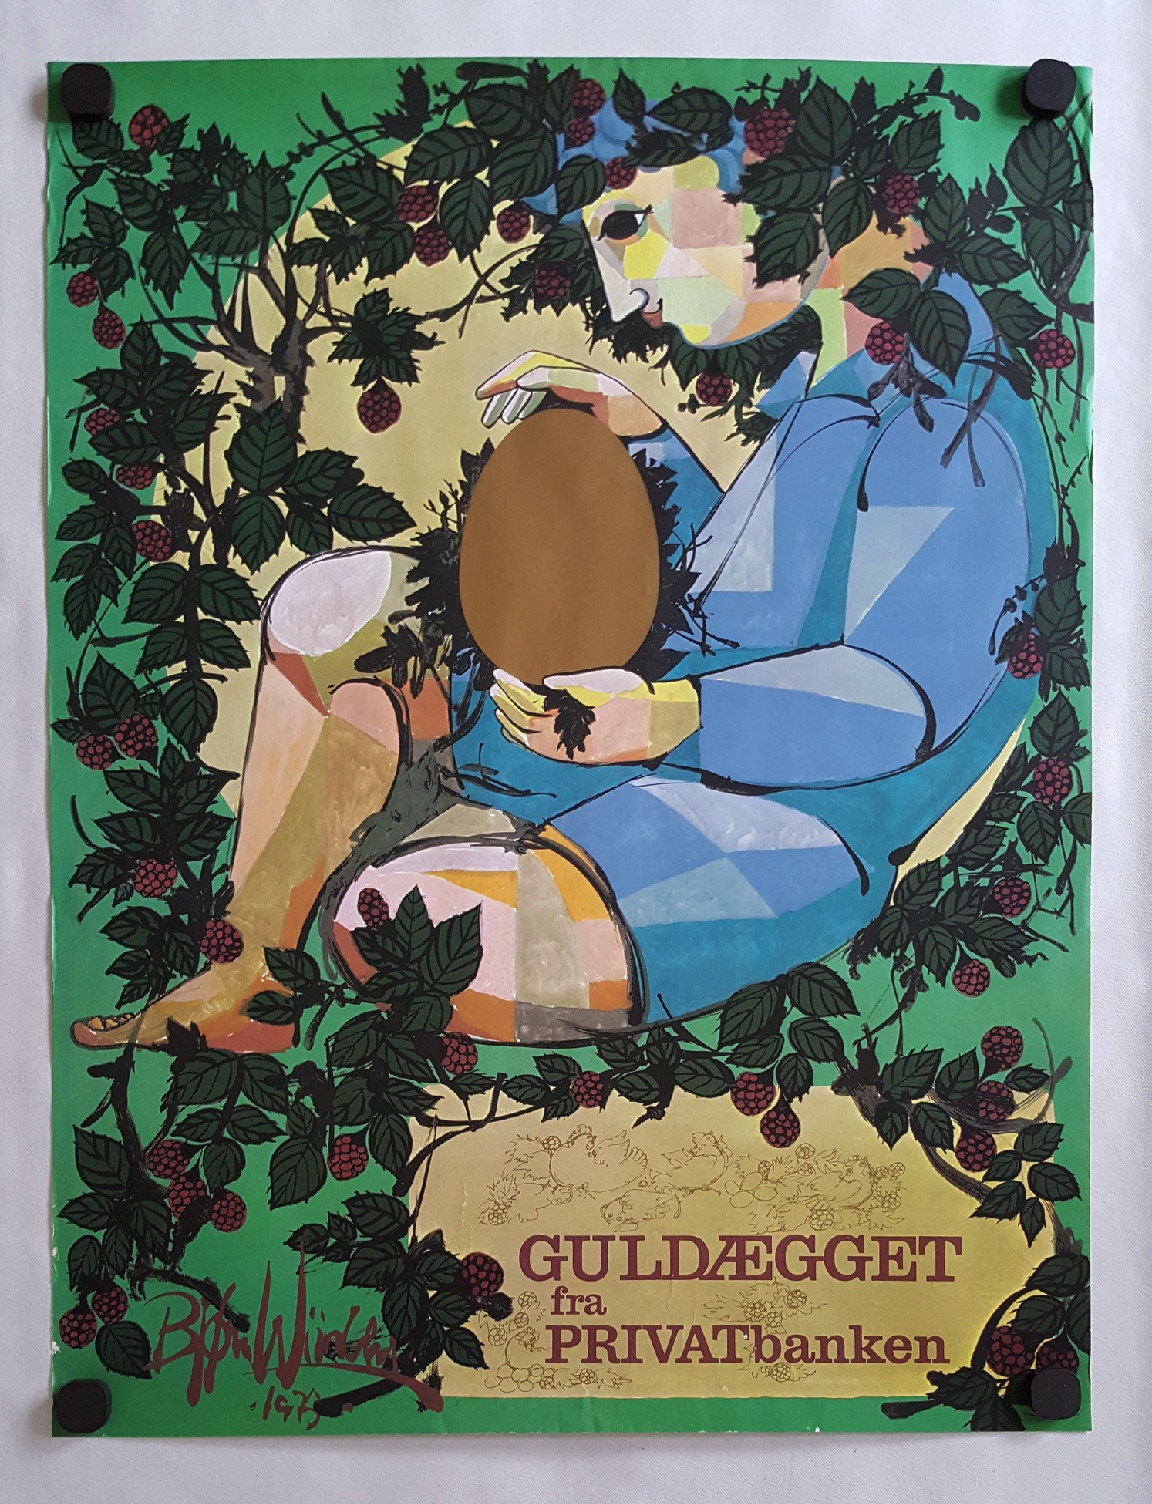 1975 Wiinblad's Golden Egg - Original Vintage Poster